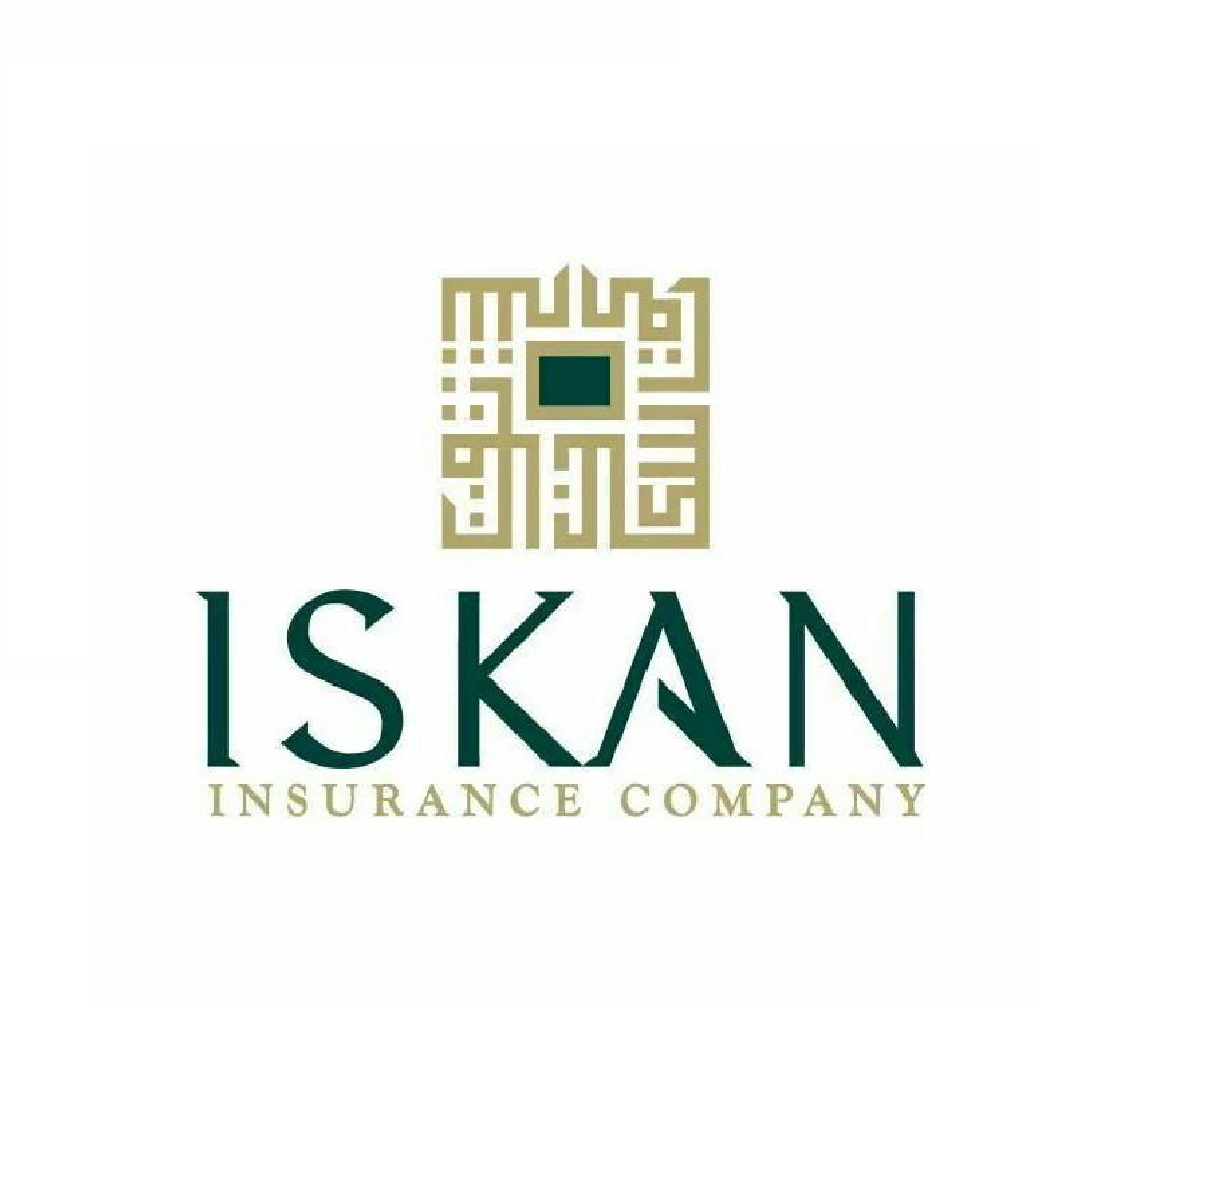 Iskan Insurance Company